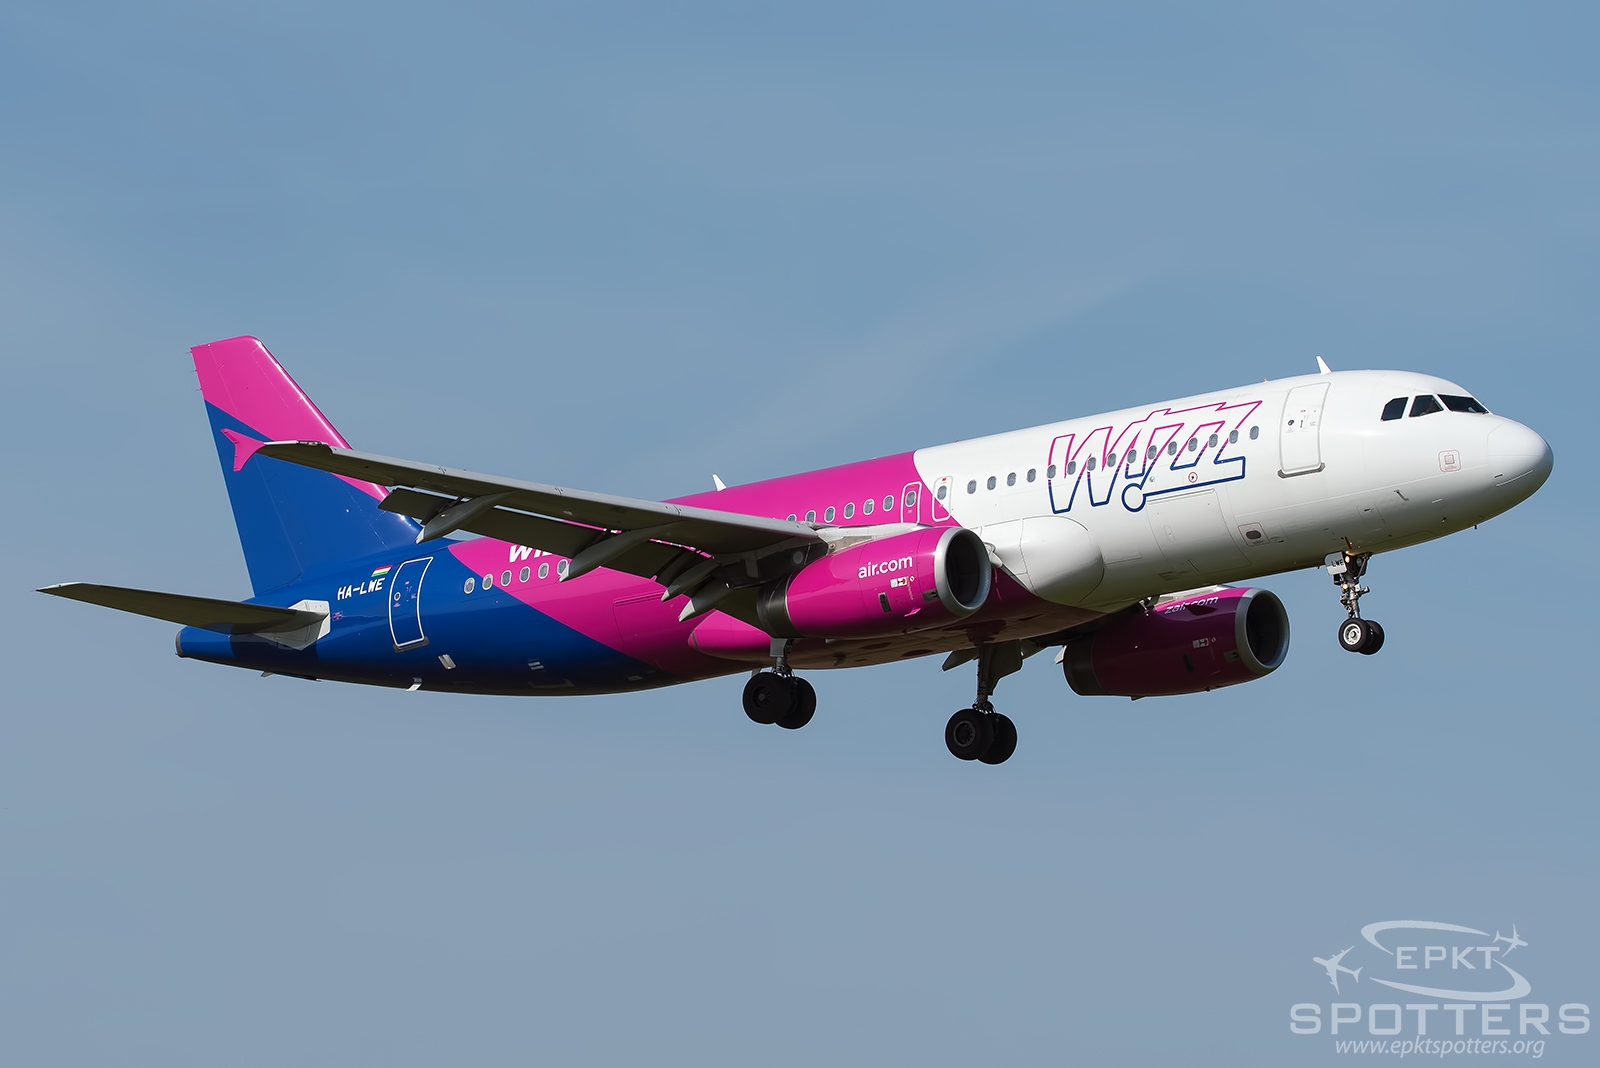 HA-LWE - Airbus A320 -232 (Wizz Air) / Lublin Airport - Lublin Poland [EPLB/LUZ]